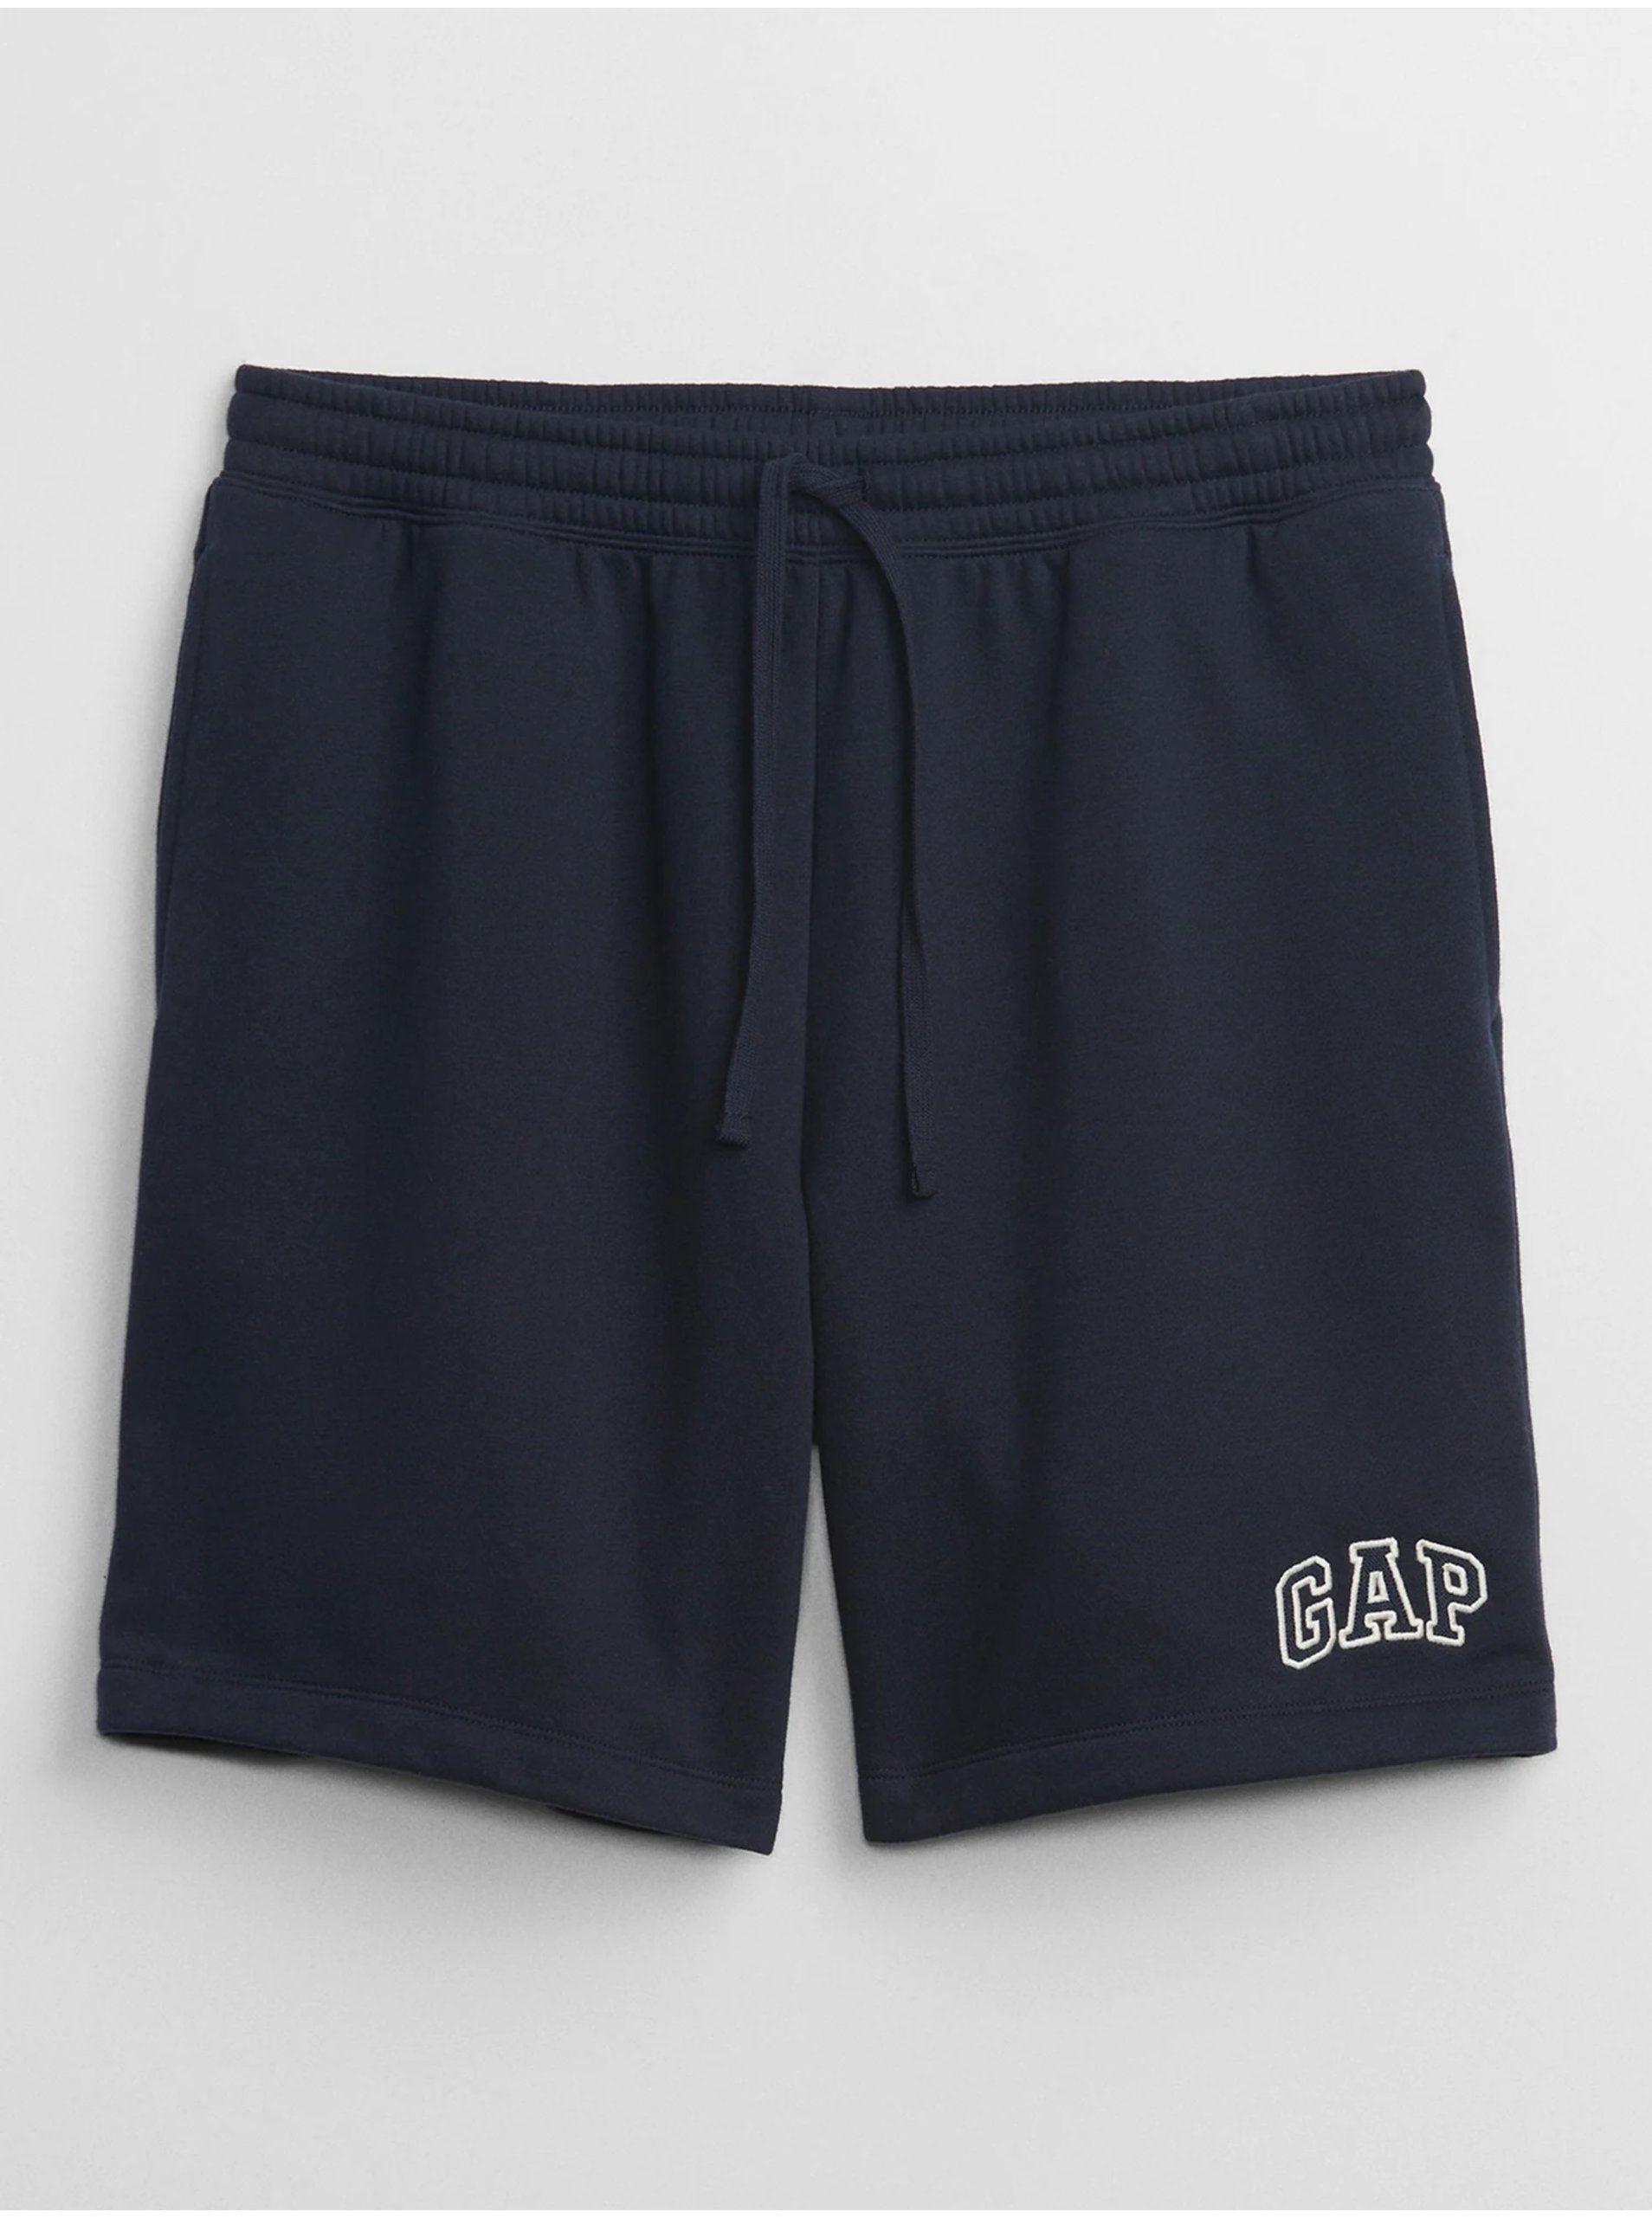 Lacno Tmavomodré pánske šortky s logom GAP